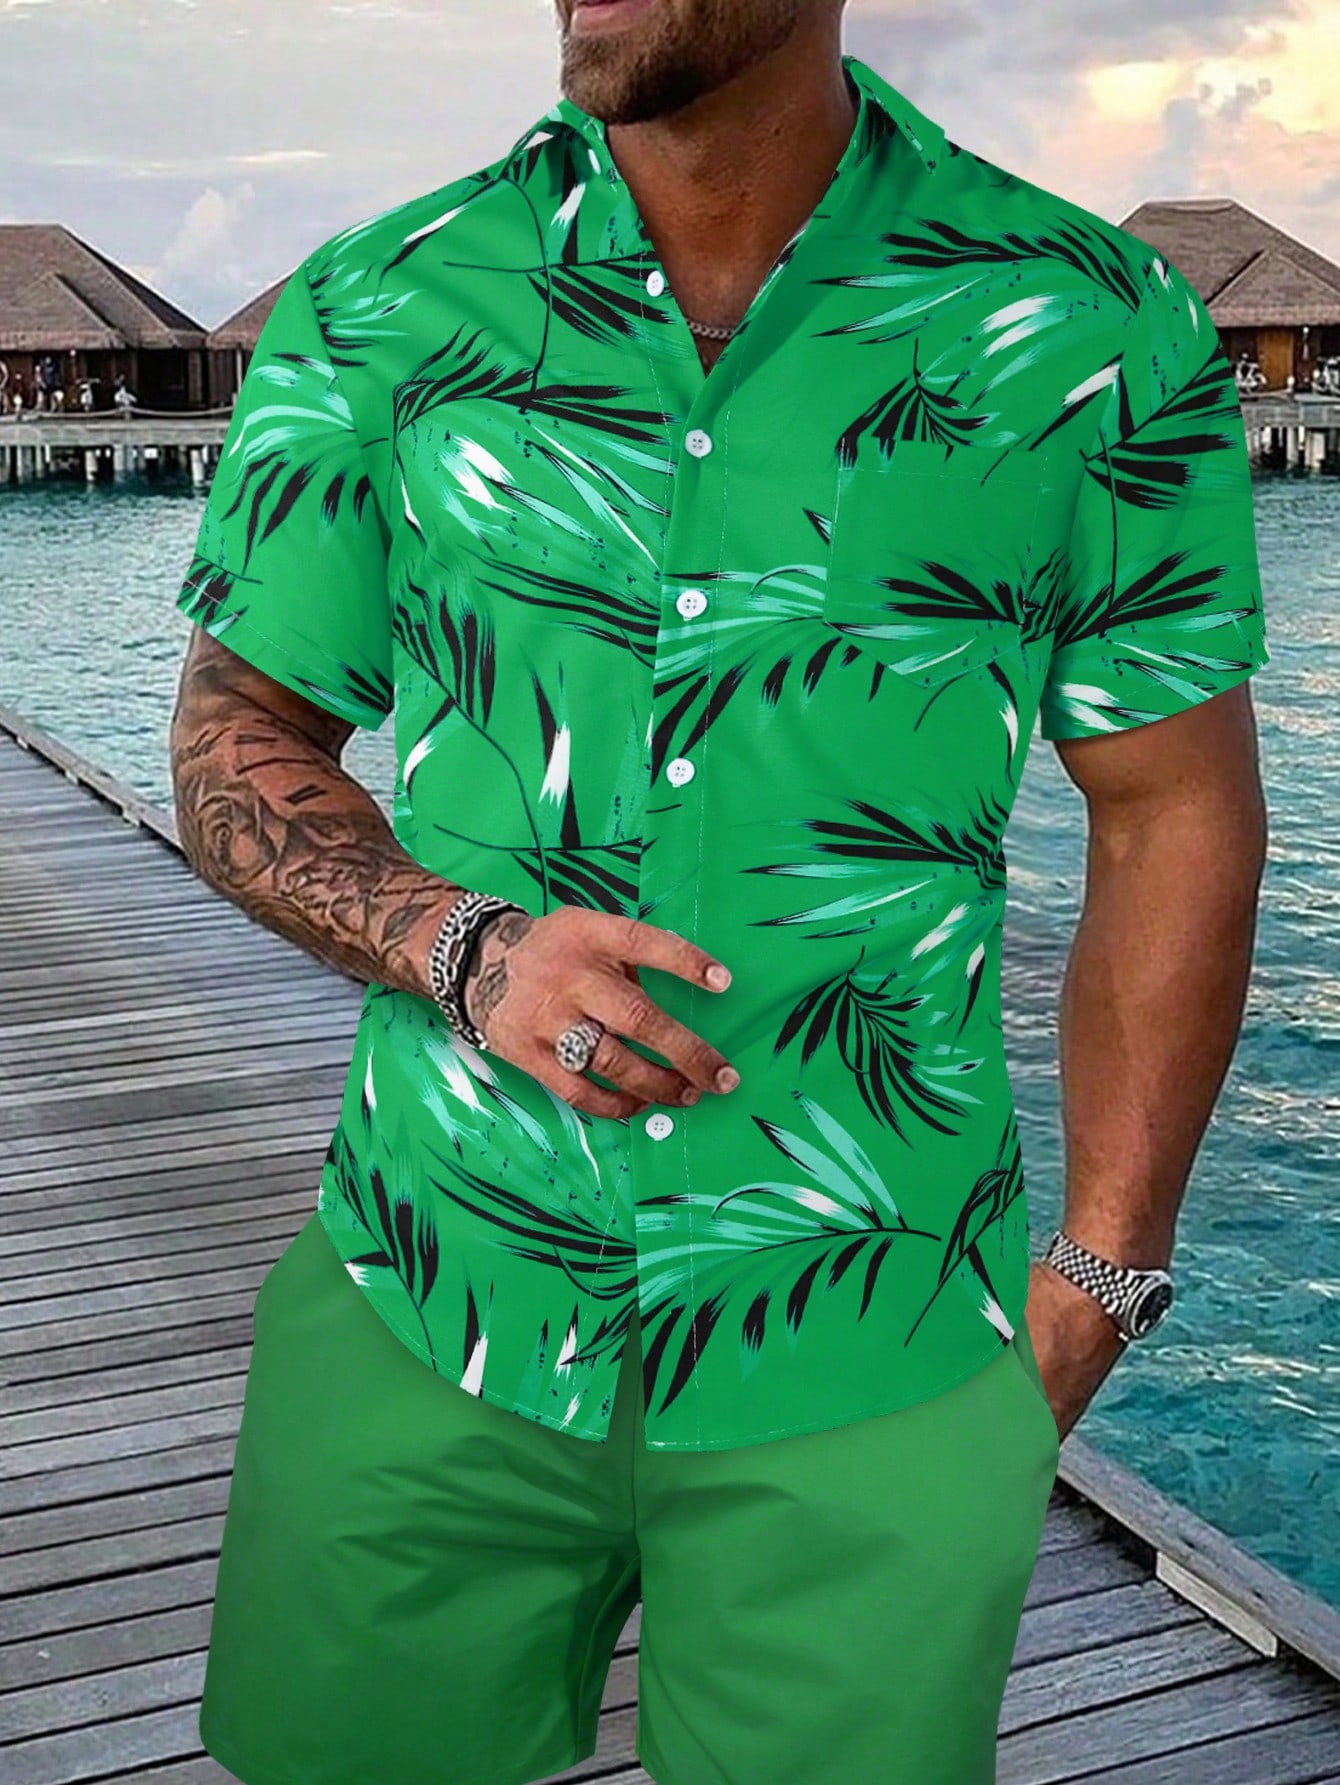 Мужская рубашка с короткими рукавами и принтом листьев на пуговицах Manfinity RSRT, зеленый рубашка мужская с коротким рукавом цифровым принтом на пуговицах повседневная домашняя одежда лето